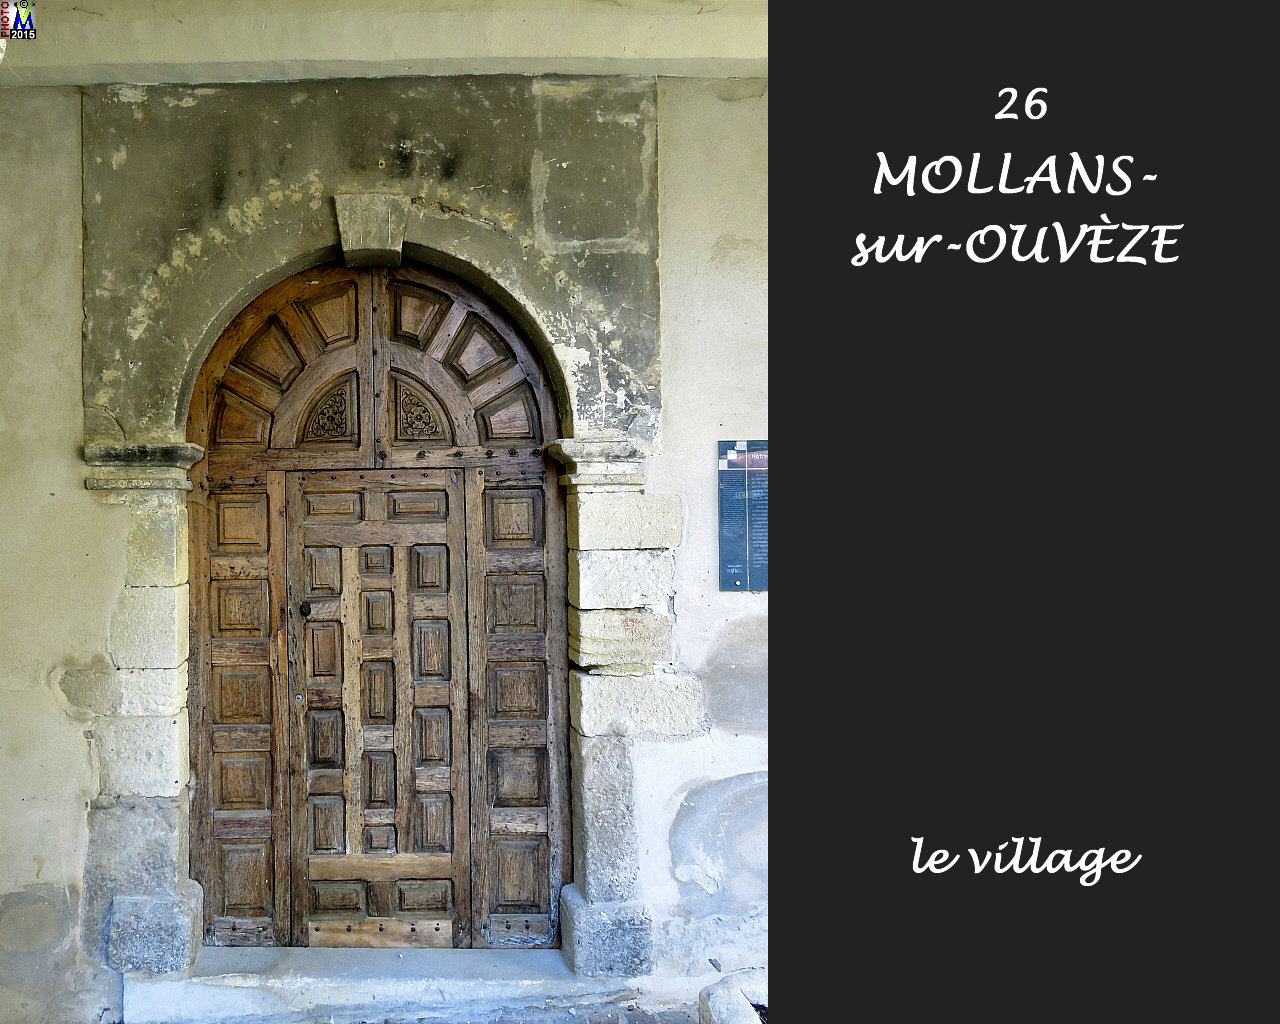 26MOLLANS-OUVEZE_village_122.jpg